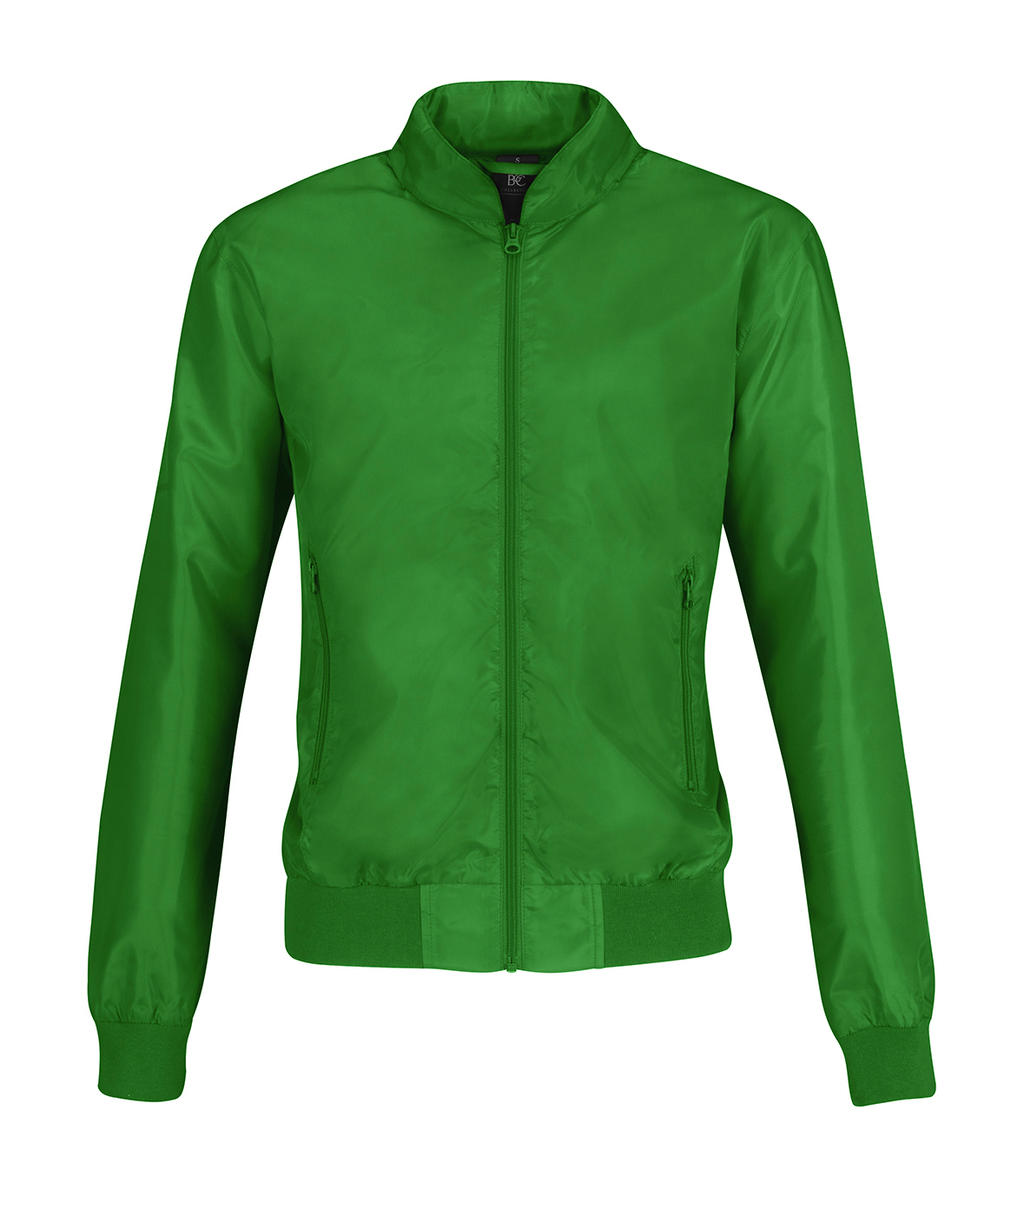  Trooper/women Jacket in Farbe Real Green/Neon Orange